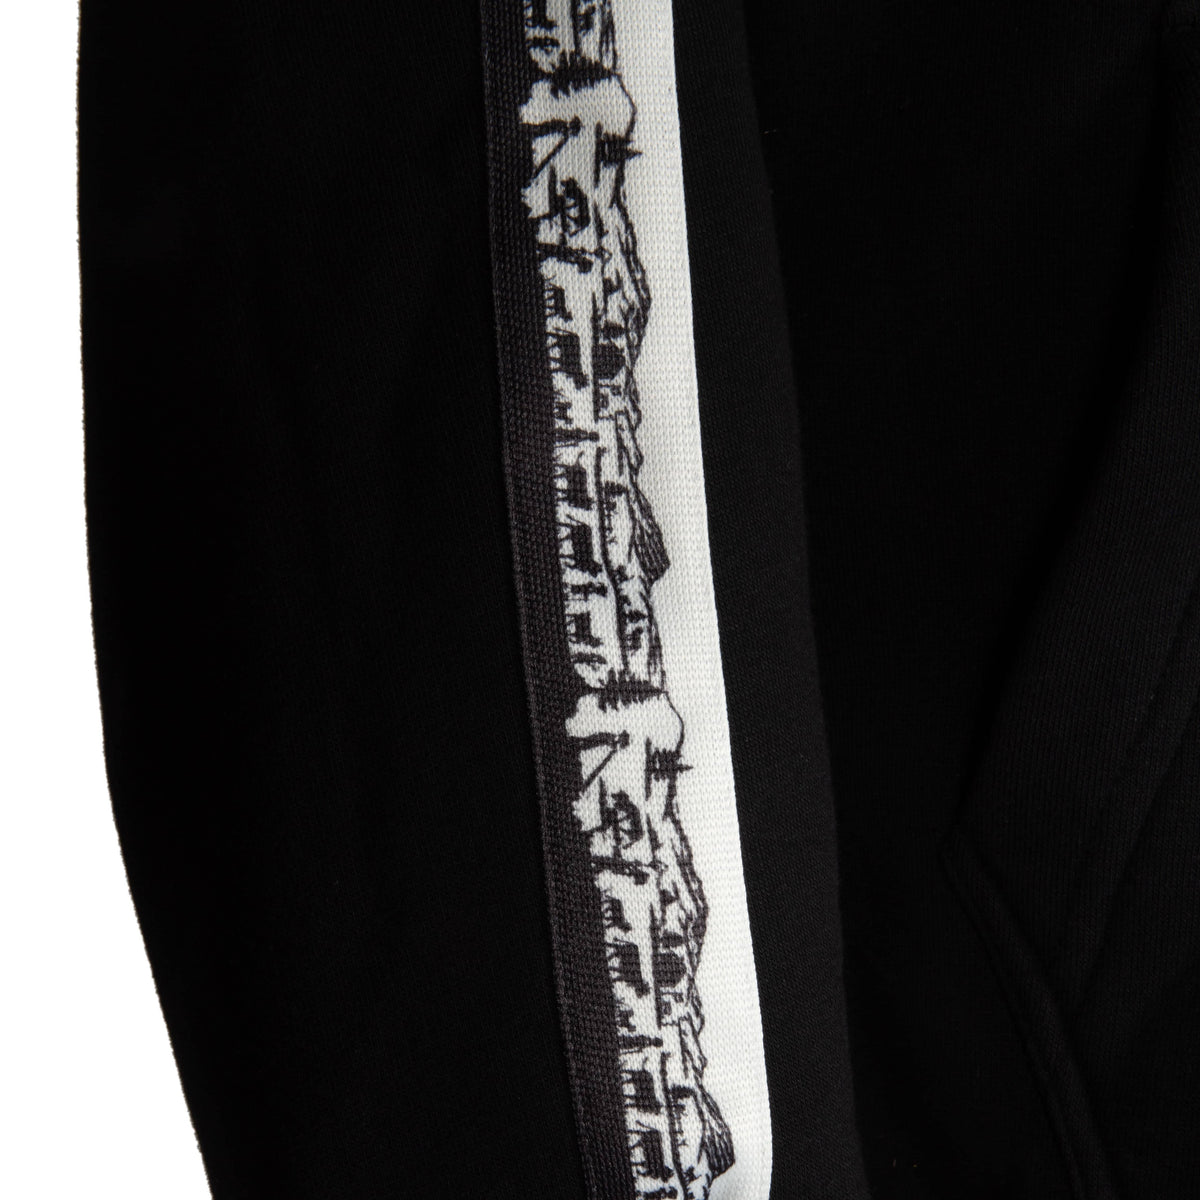 Herren Scherenschnitt-Jacke von Edelvetica, eine stilvolle und künstlerisch gestaltete Oberbekleidung. Die Jacke zeichnet sich durch ihr einzigartiges Scherenschnitt-Design aus, das traditionelle Schweizer Kunst mit moderner Mode verbindet. Ideal für einen auffälligen und kultivierten Look.